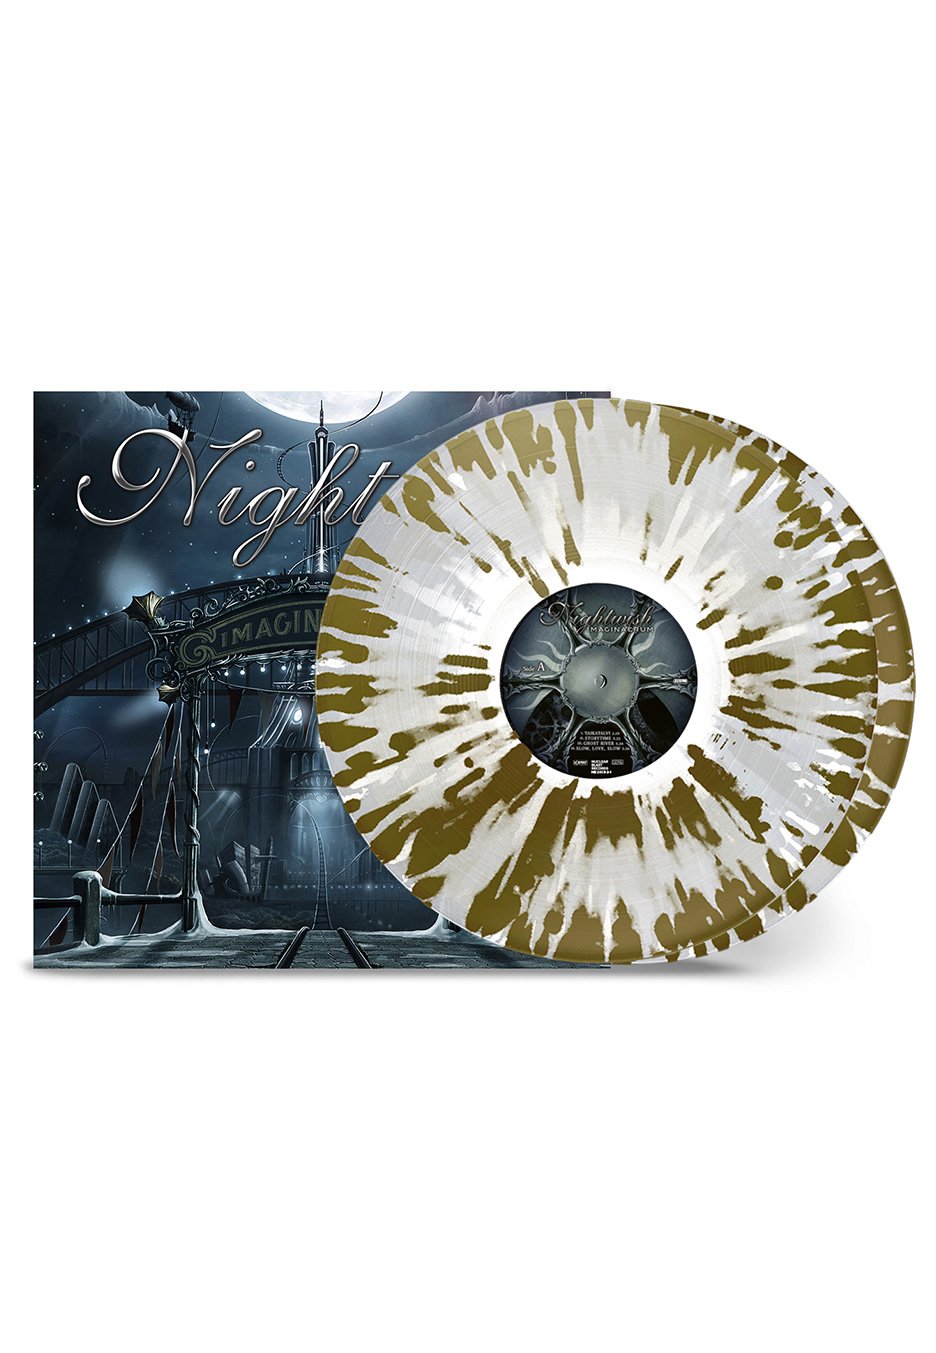 Nightwish - Imaginaerum Clear/Gold/White Ltd. - Splatter 2 Vinyl